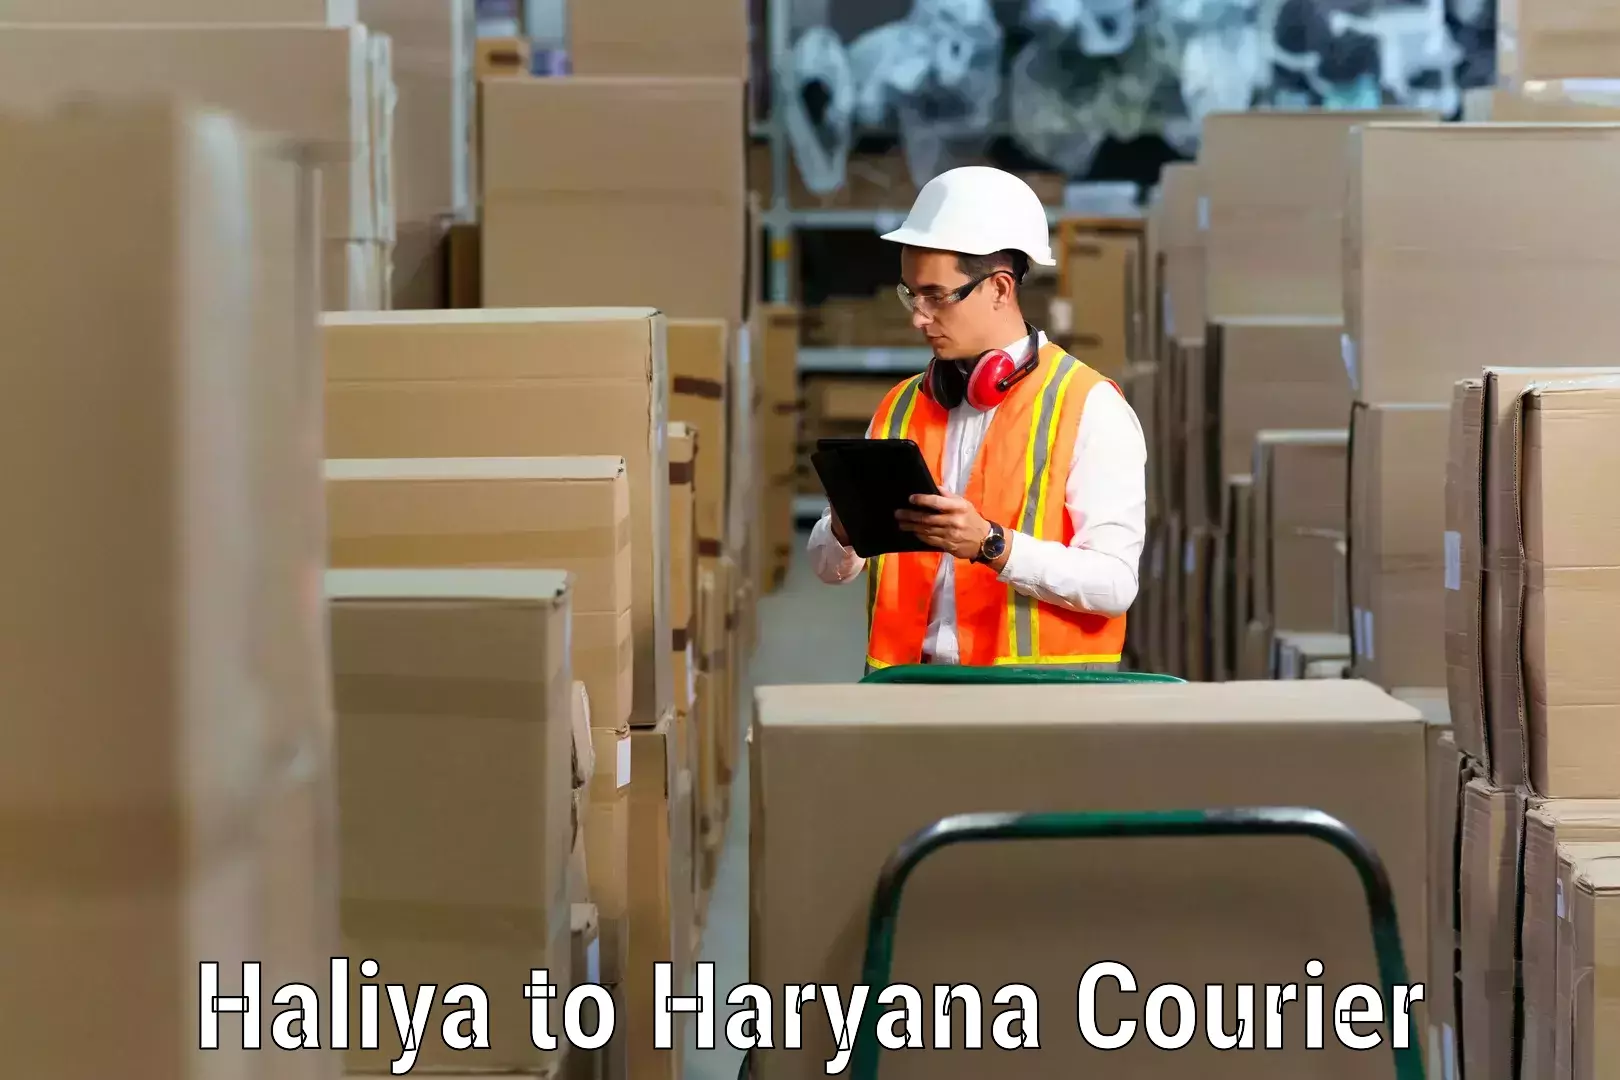 Furniture transport solutions in Haliya to Dharuhera